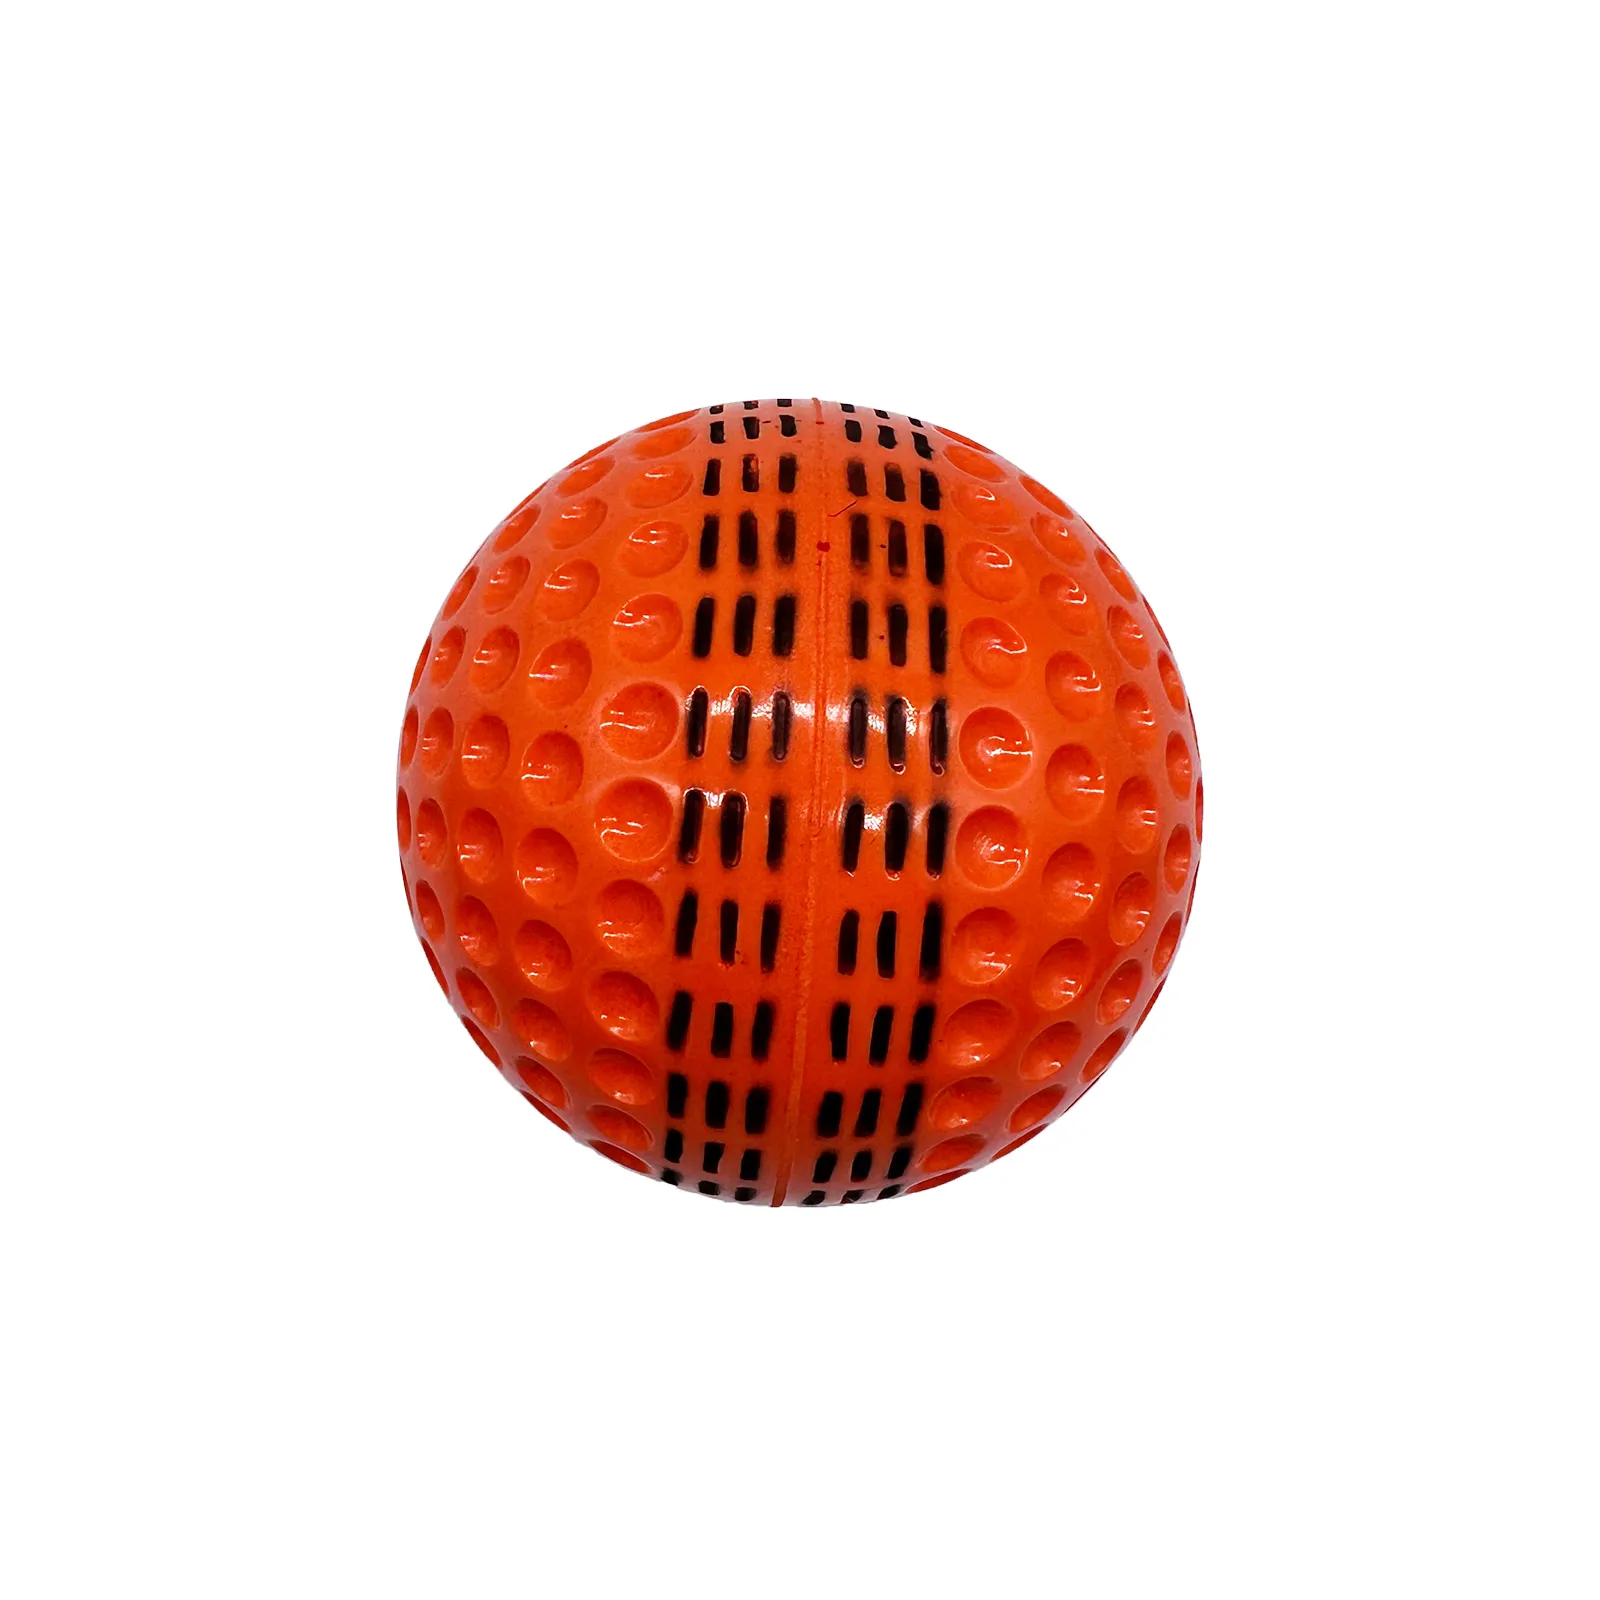 Fabrik preis Aus gezeichnete Qualität 9 Zoll 57g Cricket ball für das Training